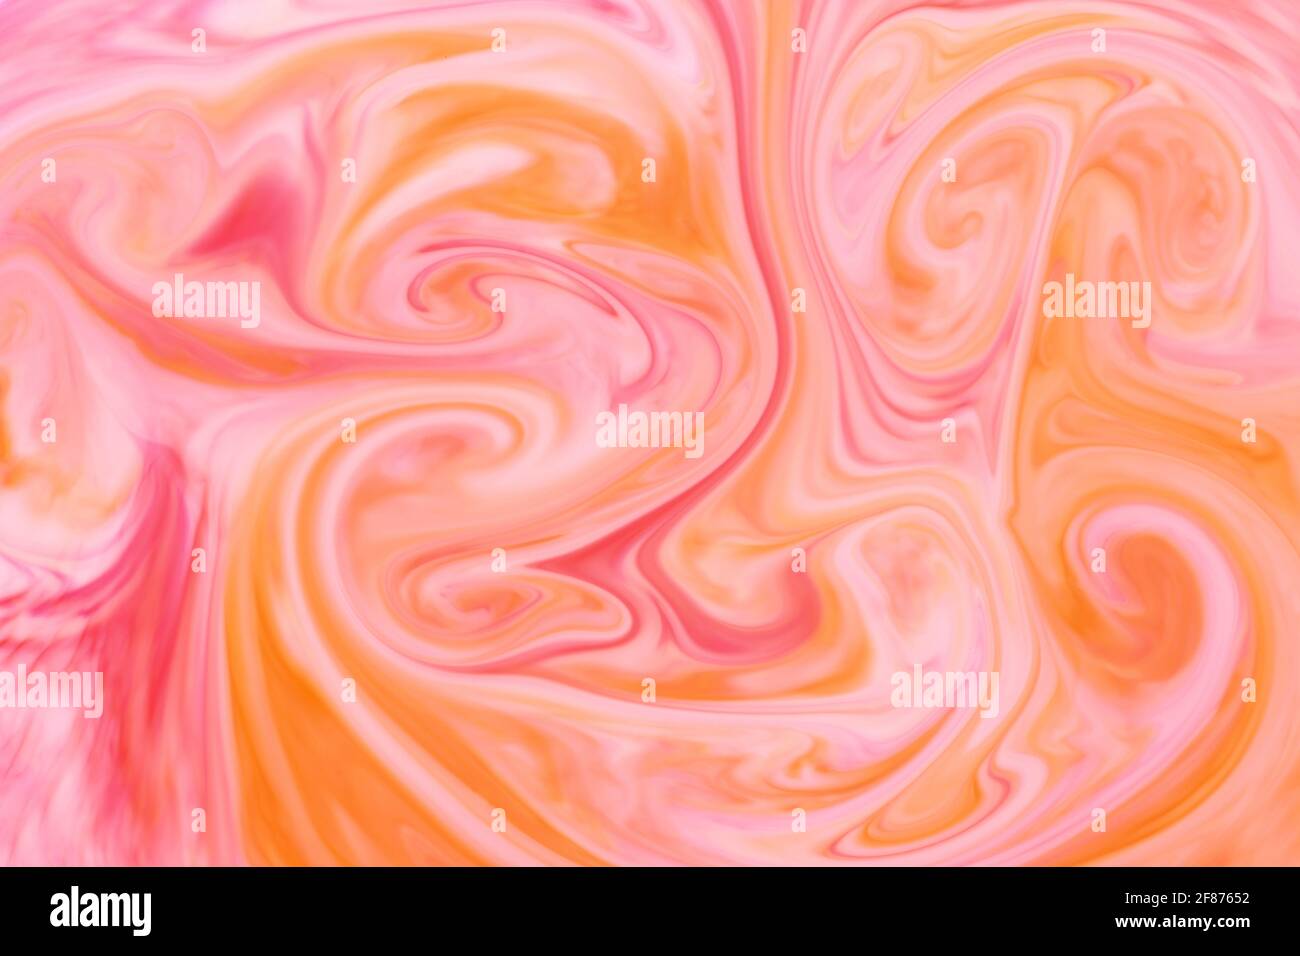 Textura de fondo abstracta de remolinos o de color naranja y rosa tinta o pigmento que forman una mezcla artística de colores para una plantilla de diseño Foto de stock